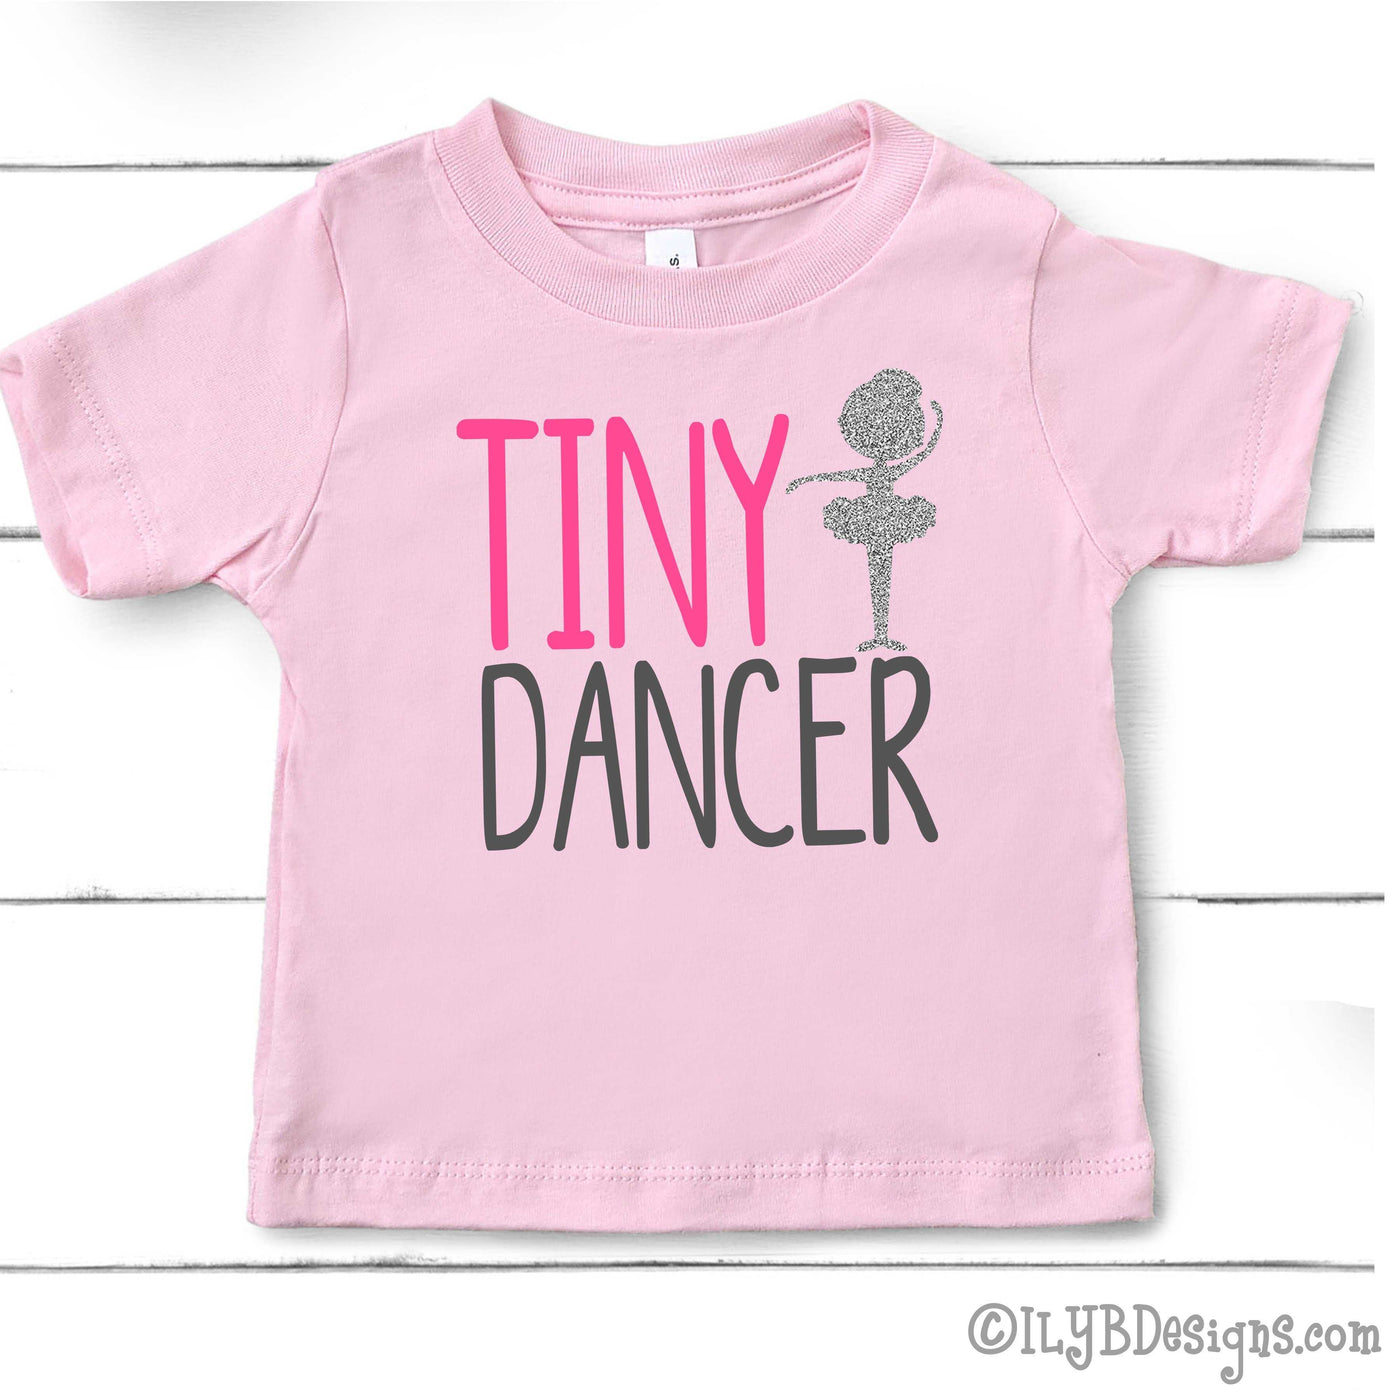 Tiny Dancer Shirt - Dance Shirt - Little Girl Dancer Shirt - Little Girls Shirts - Dancer Gift - Shirt for Dancer - Dance T-shirt - ILYB Designs